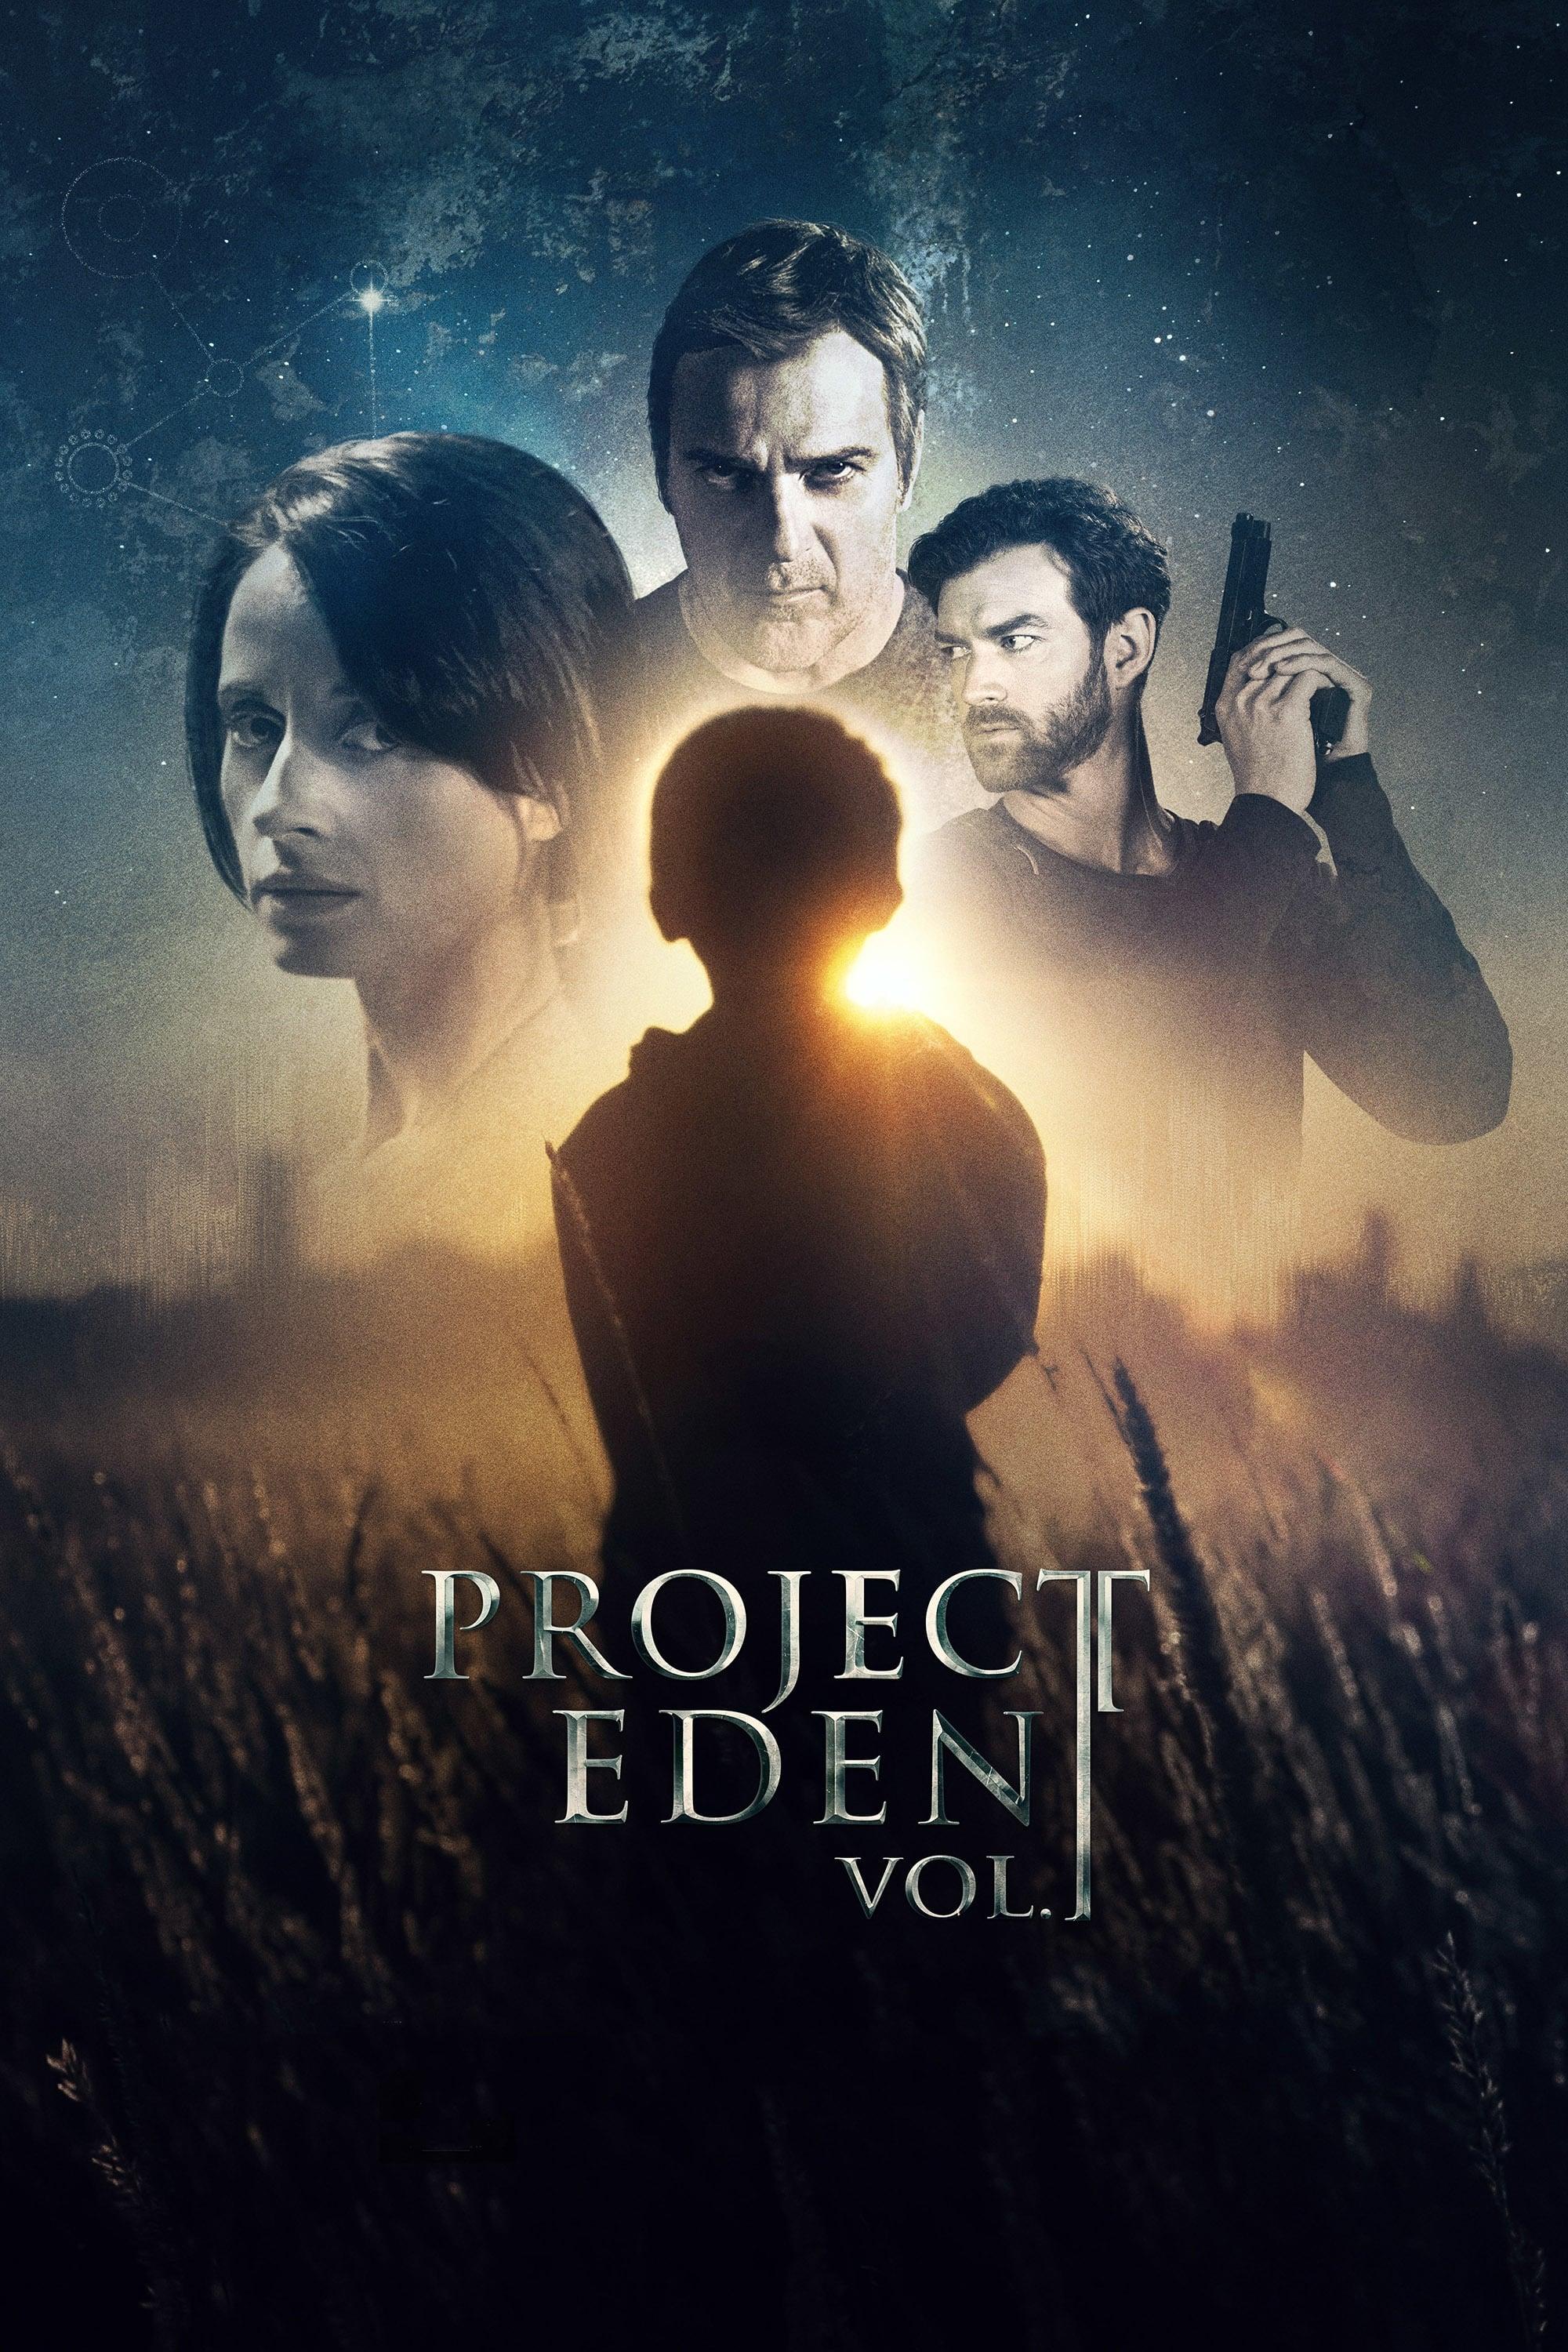 Project Eden: Vol. I poster